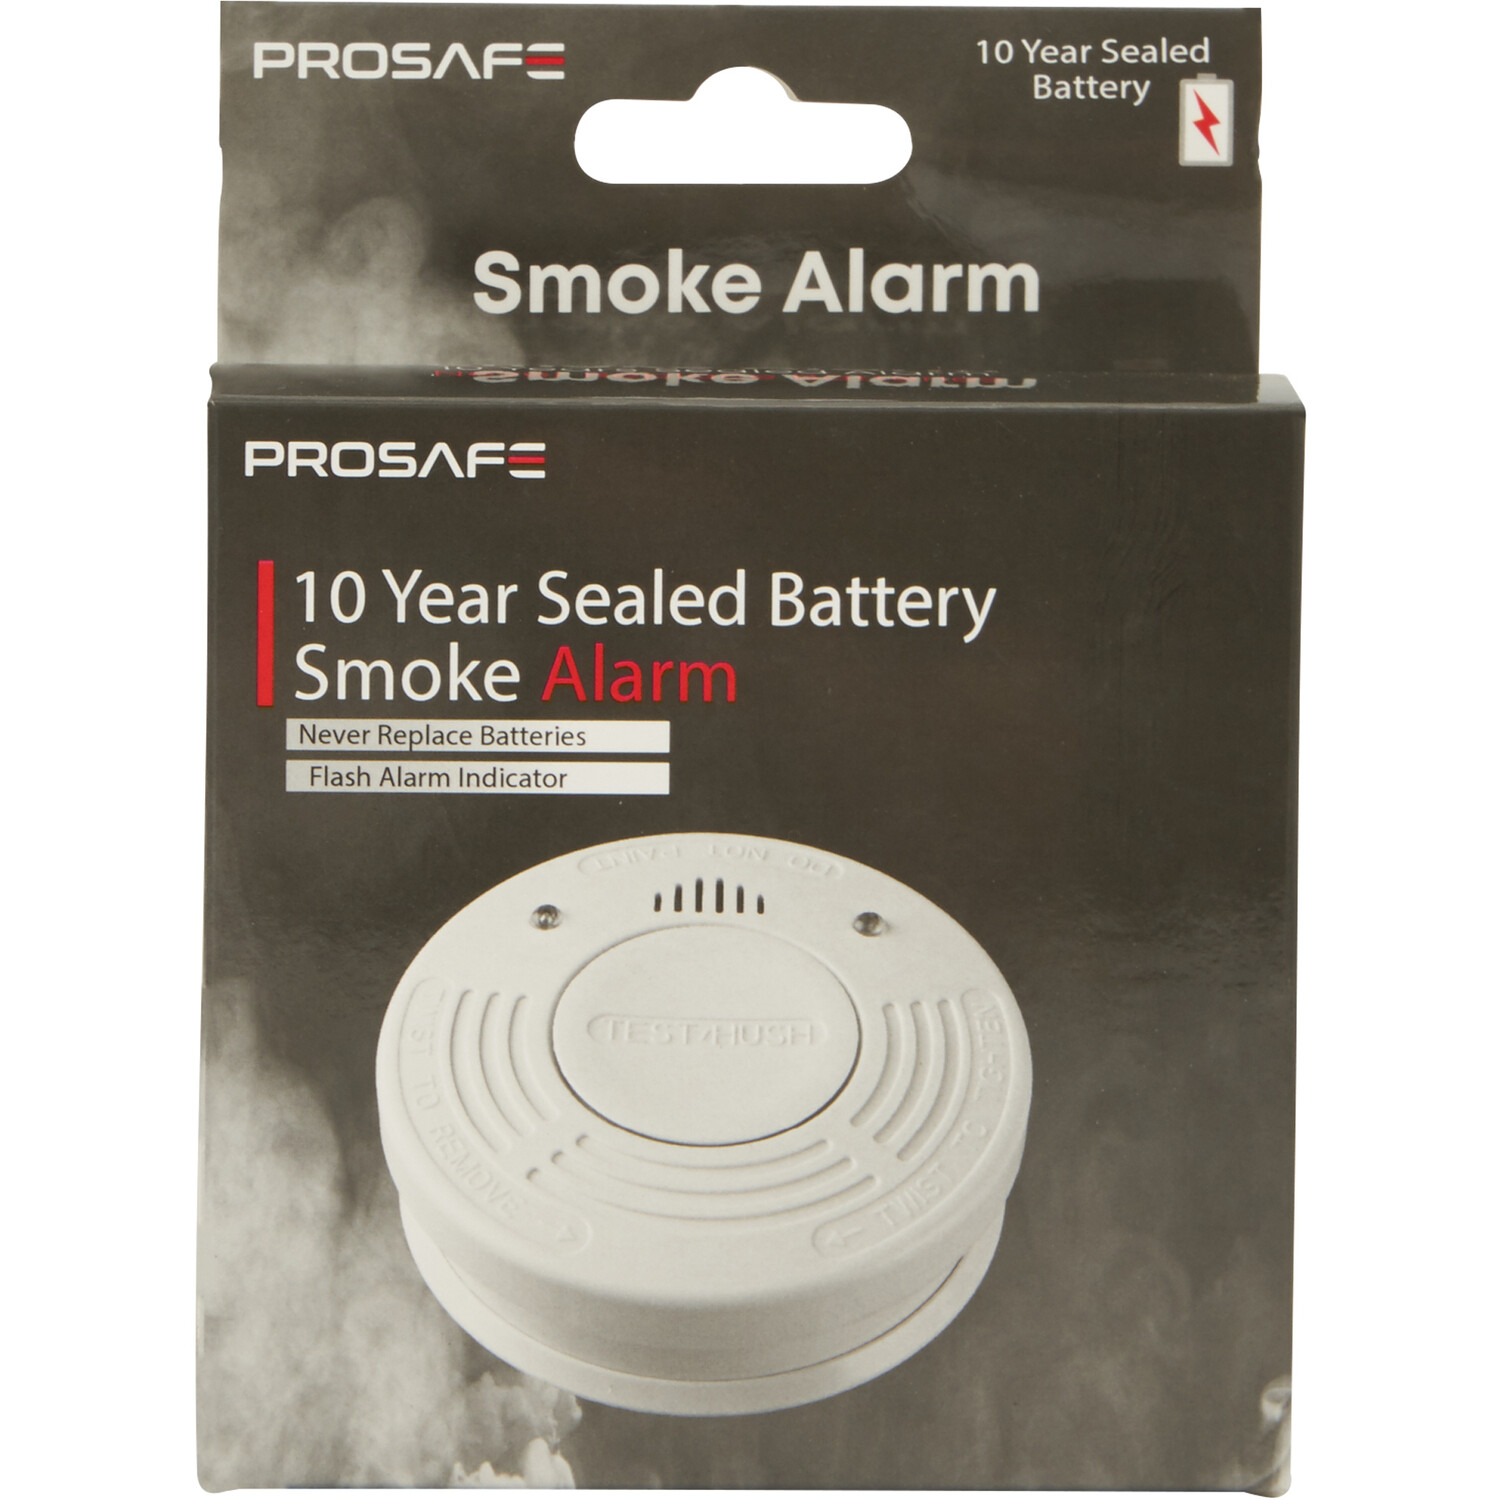 10 Year Sealed Battery Smoke Alarm Image 2